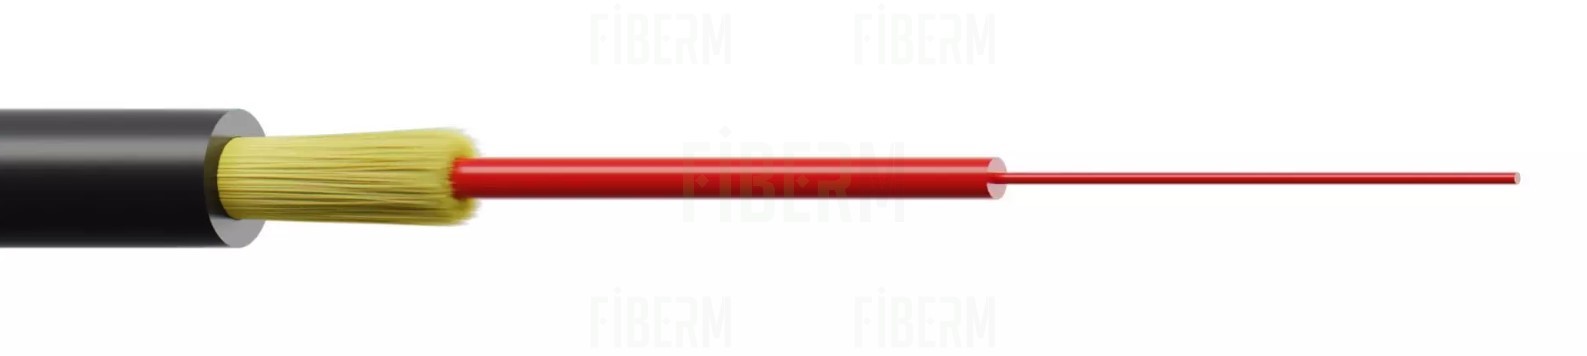 FIBRAIN AERO-DR03 Optický Kabel pro Předplatitele FTTH 1J 300N